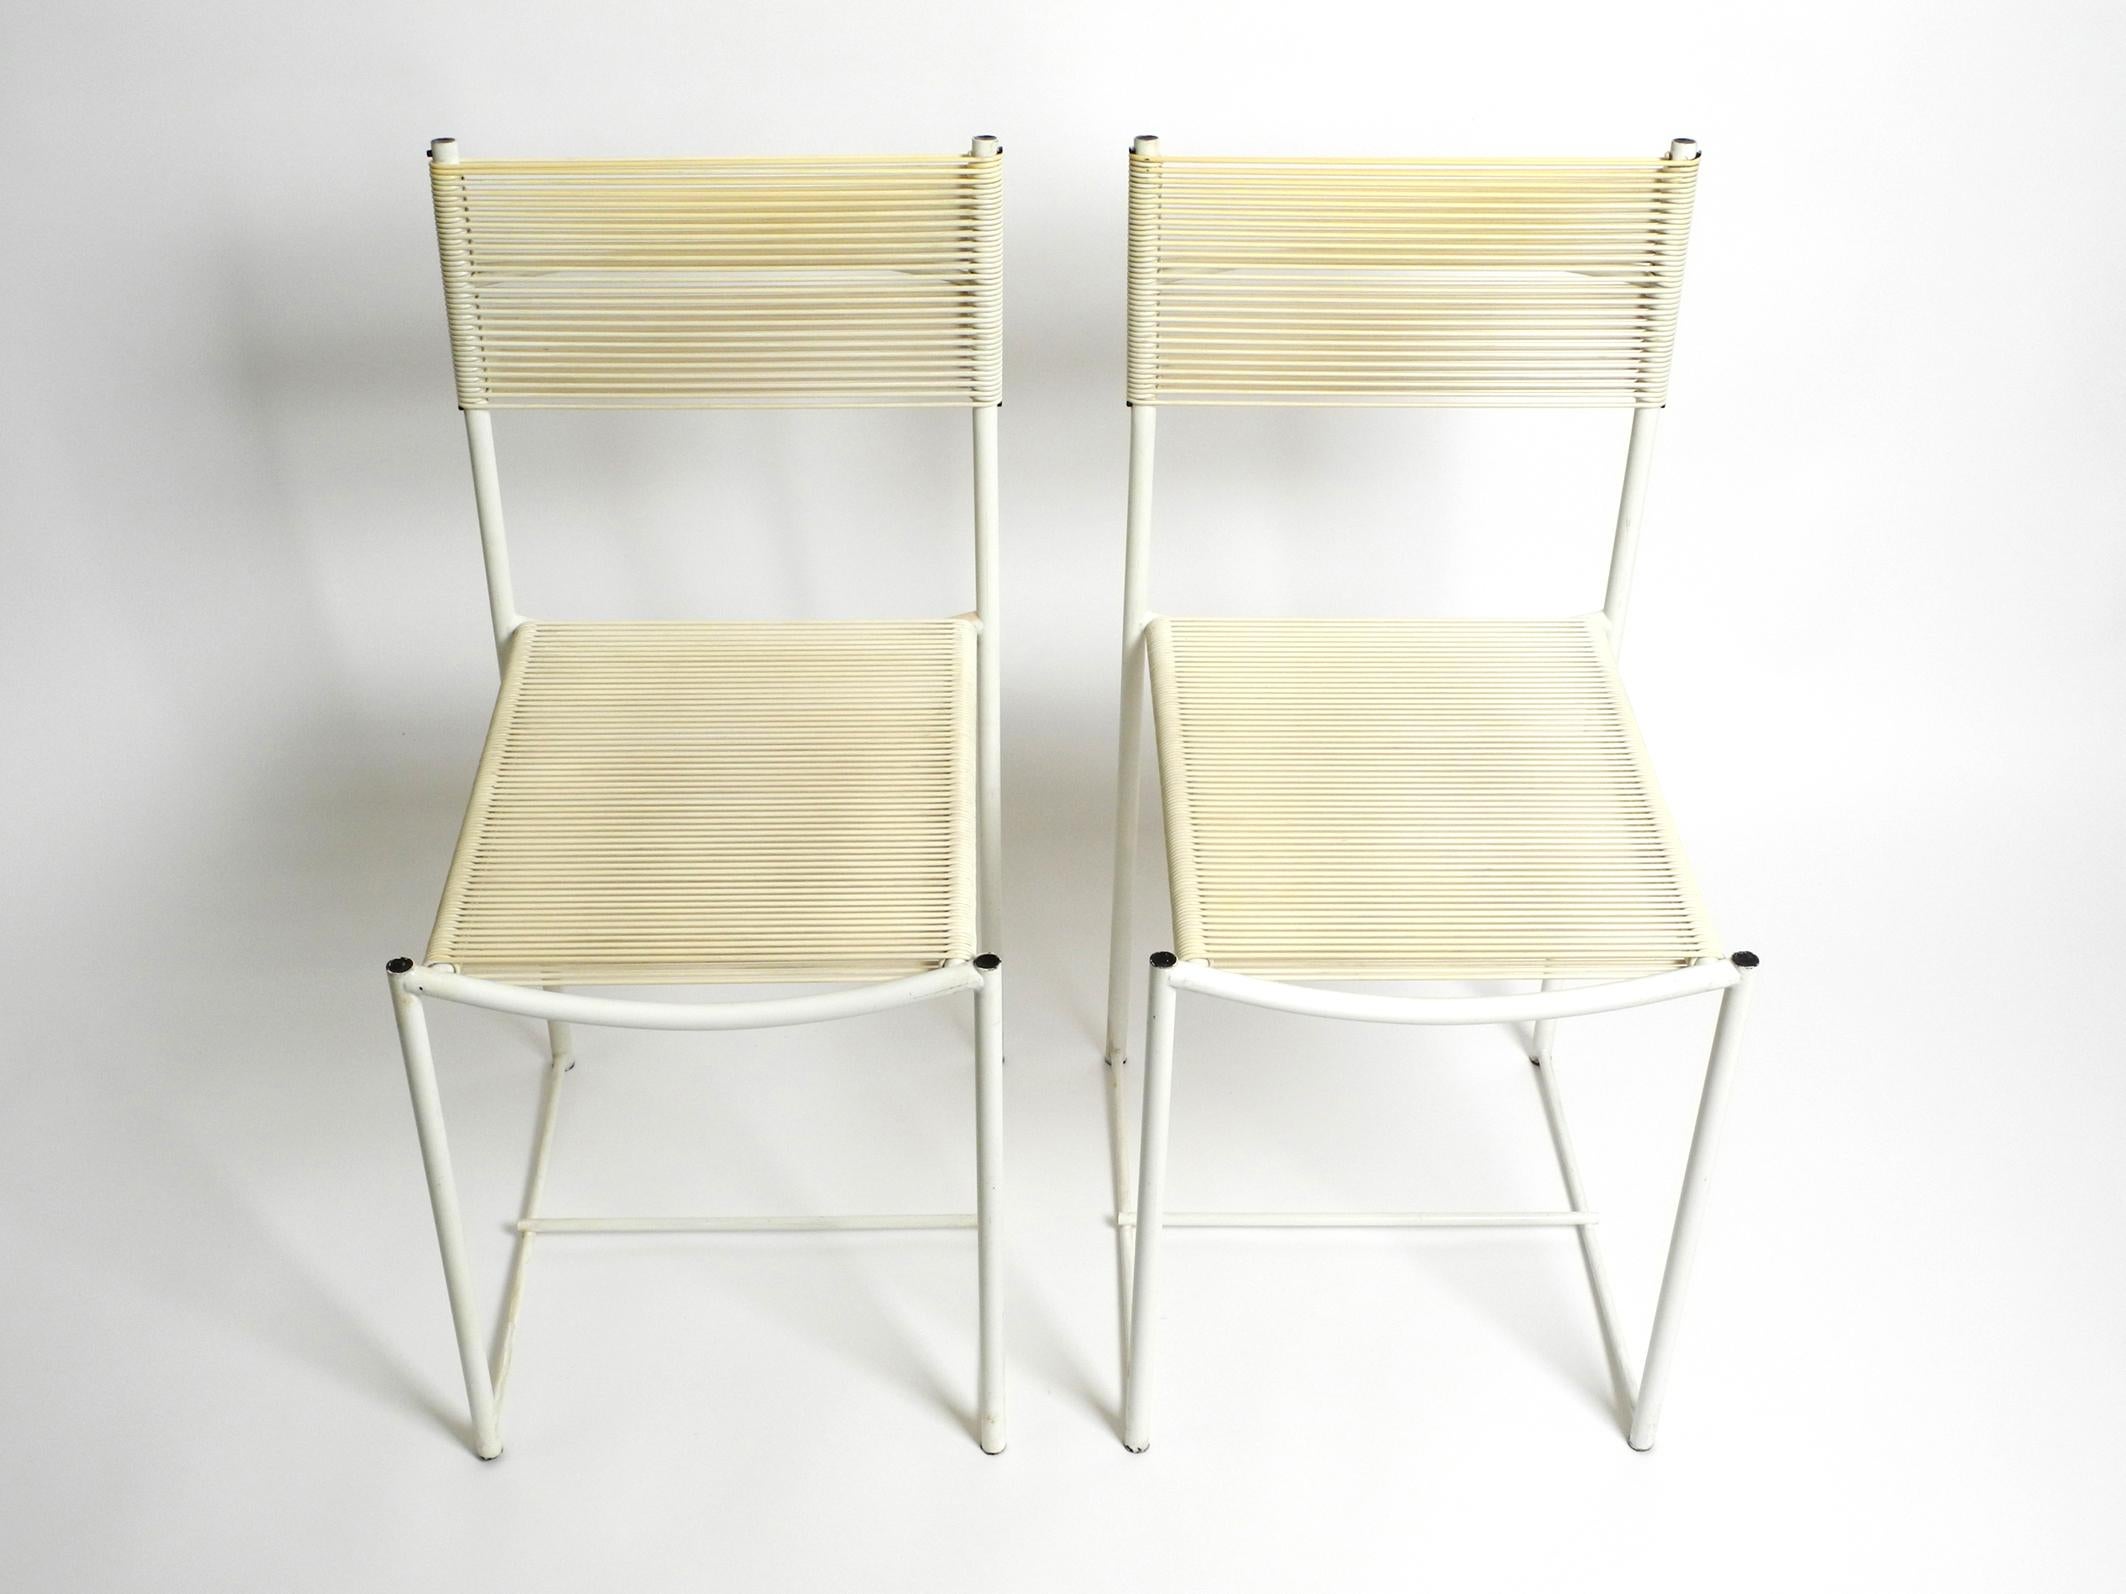 Ein Paar originaler Spagetti-Stühle aus den 70er Jahren in Weiß von Giandomenico Belotti. Hersteller ist Alias. Hergestellt in Italien. Rare in weiß lackiertem Gestell und weißen Sitzen + Rückenlehnen. Schönes minimalistisches italienisches Design